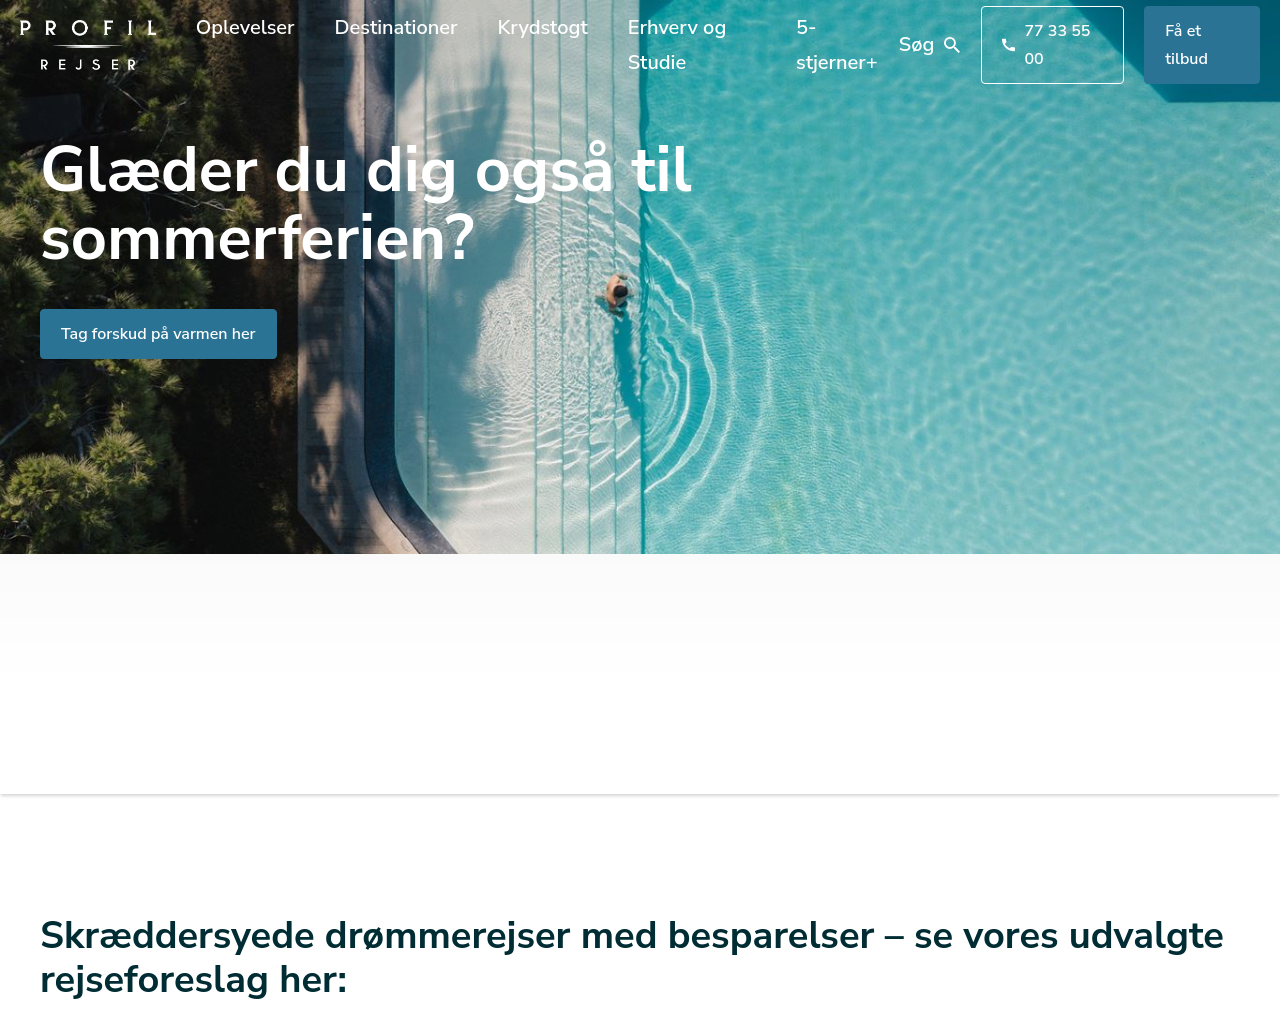 profil-rejser.dk